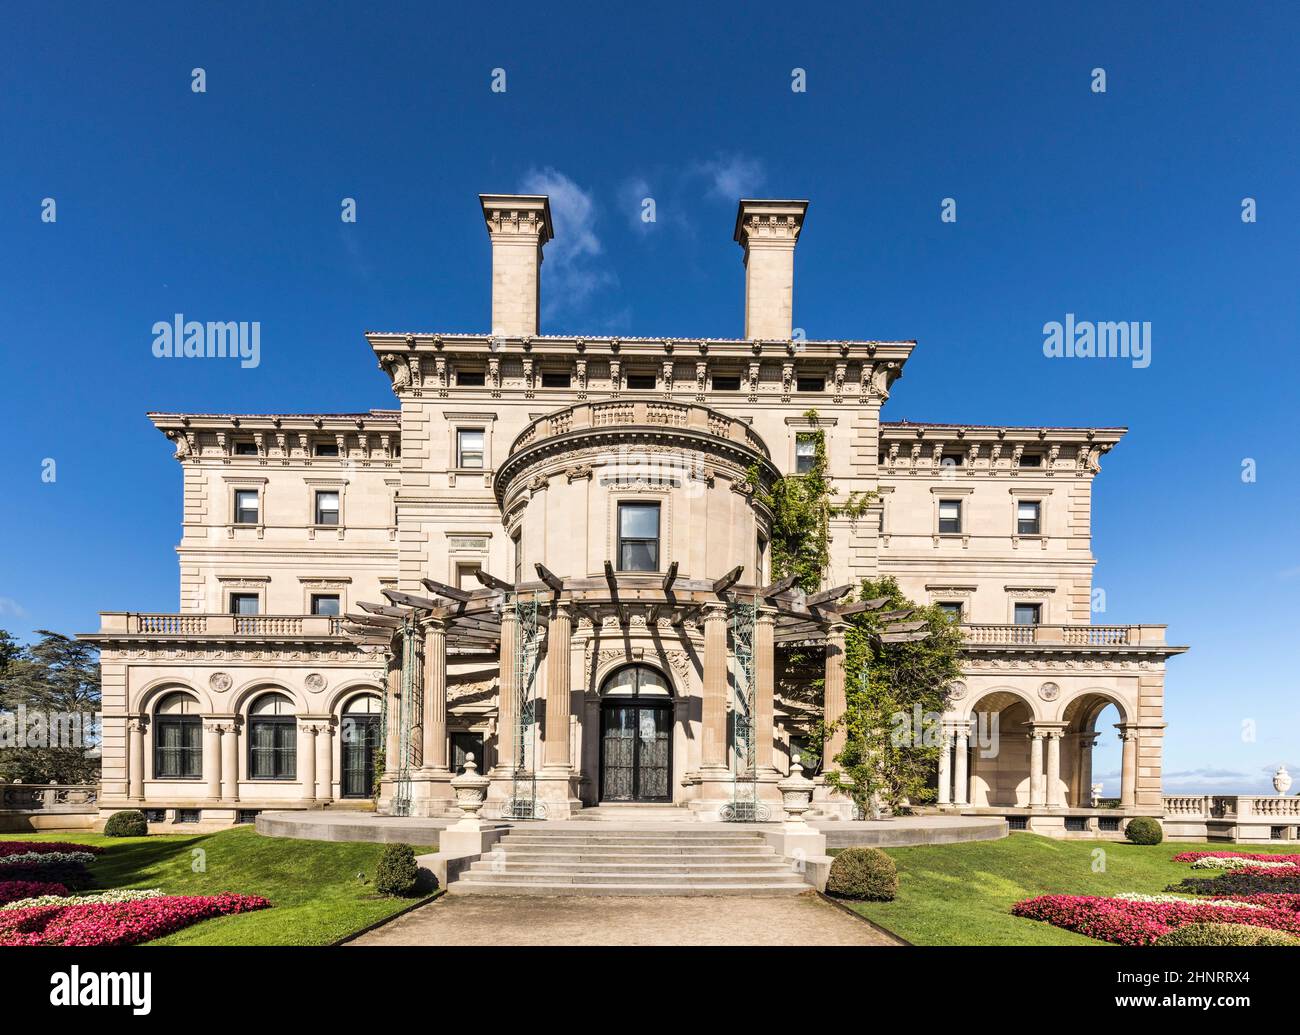 Das Breakers ist ein altes Newport Mansion, das für die Öffentlichkeit zugänglich ist Stockfoto